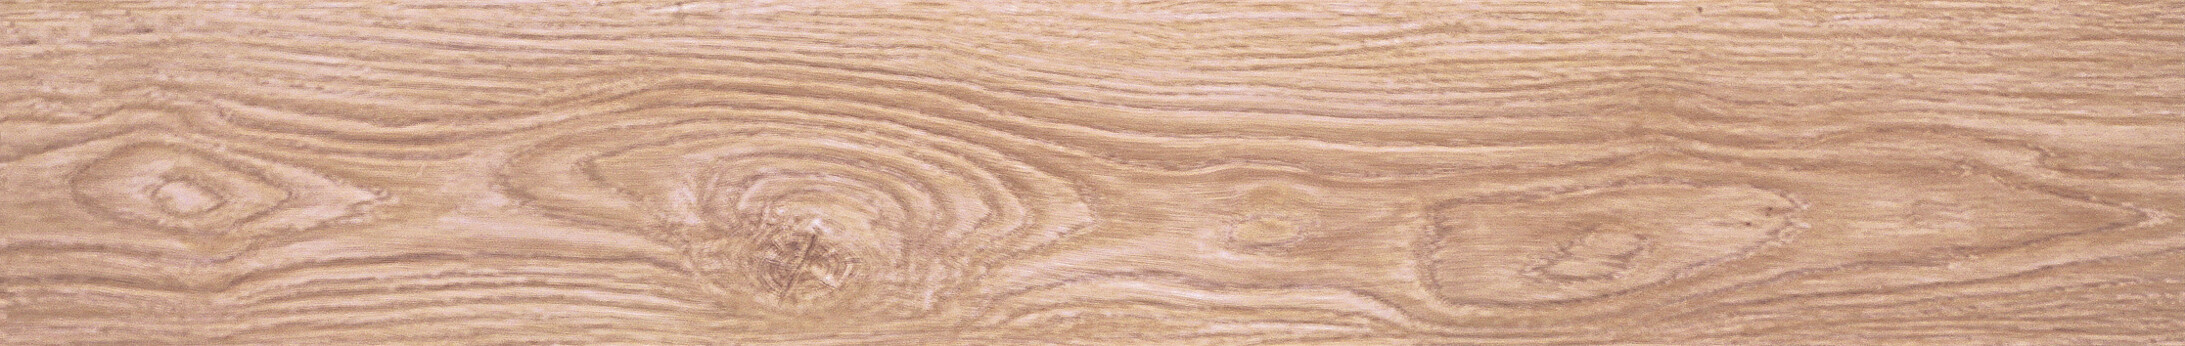 لمینت اووک وود(oak wood) - کد 181102